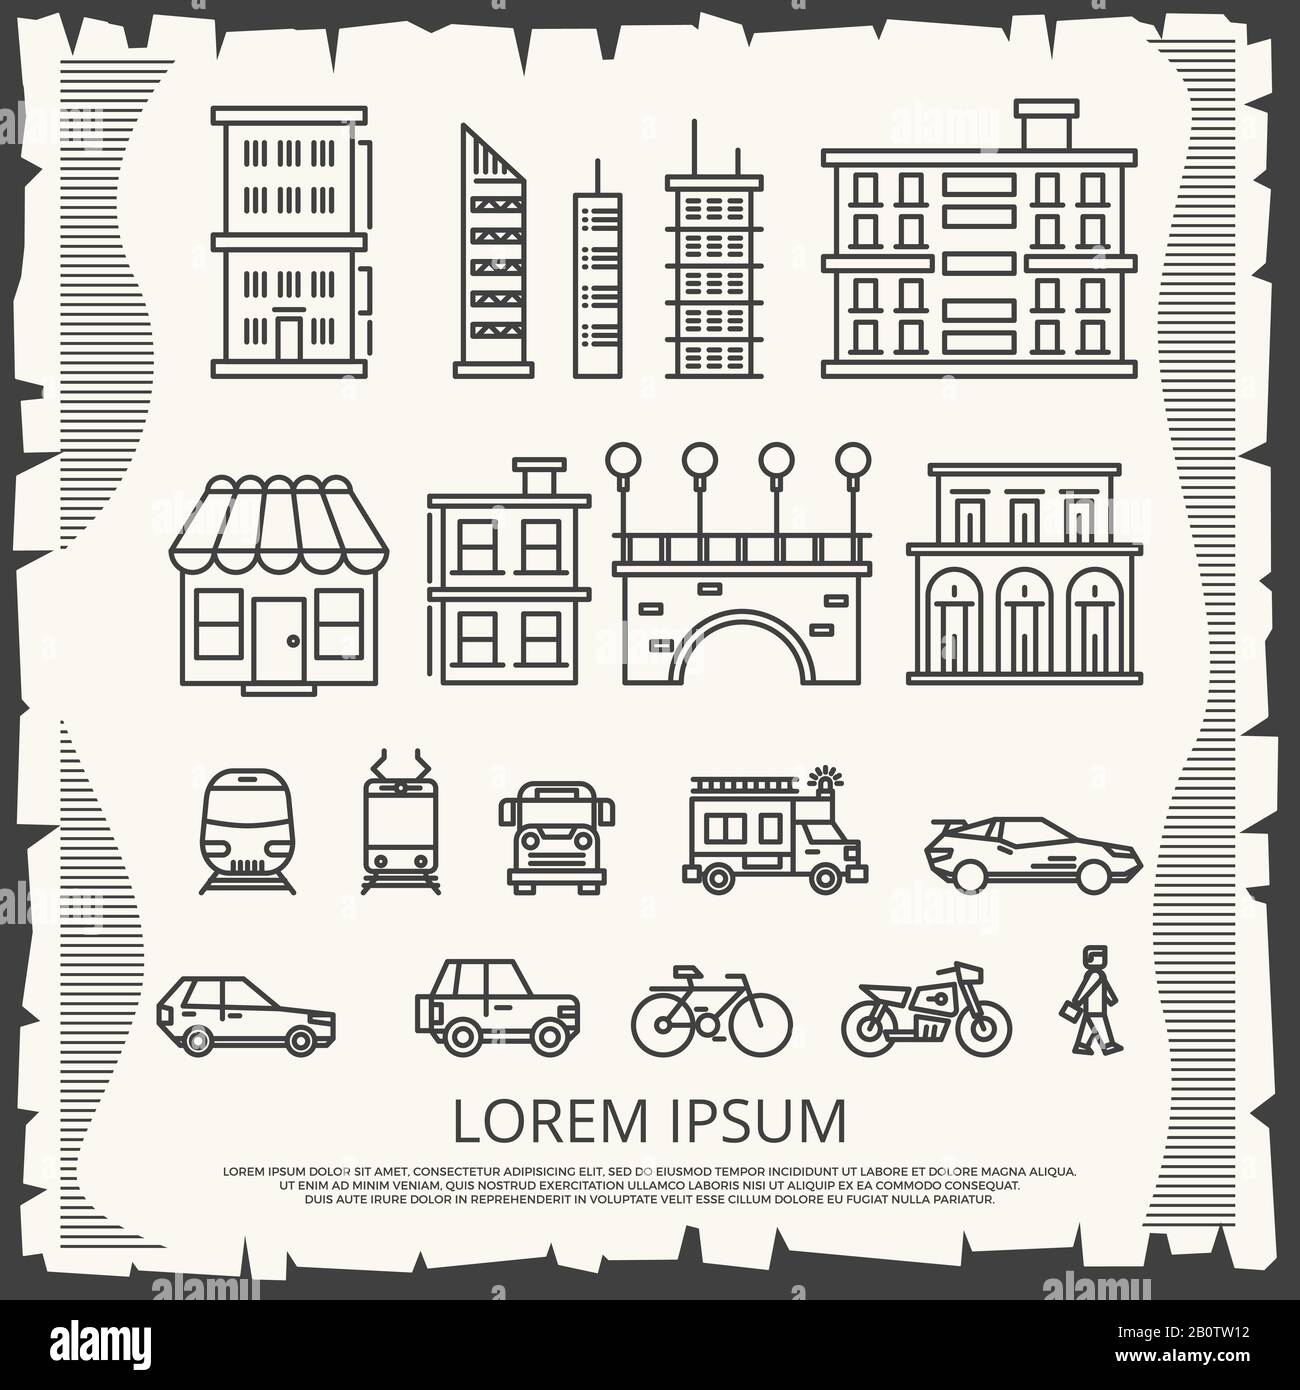 Elementi moderni della città su poster vintage - design di poster della città d'arte di linea. Illustrazione vettoriale della costruzione di moda urbana Illustrazione Vettoriale